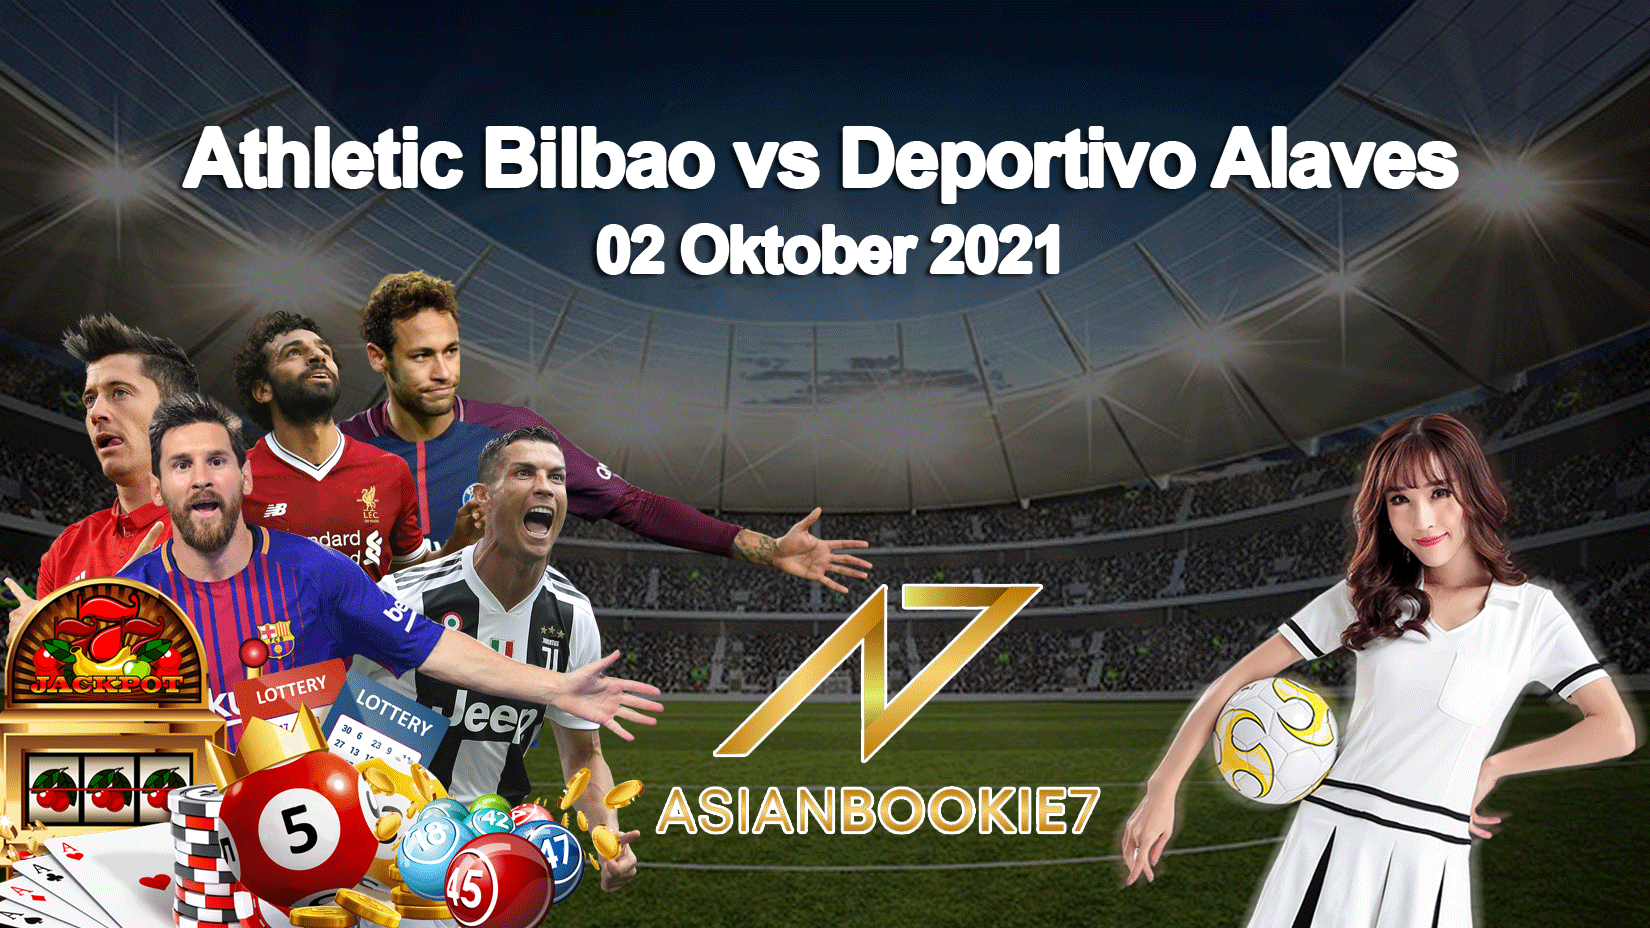 Prediksi Athletic Bilbao vs Deportivo Alaves 02 Oktober 2021